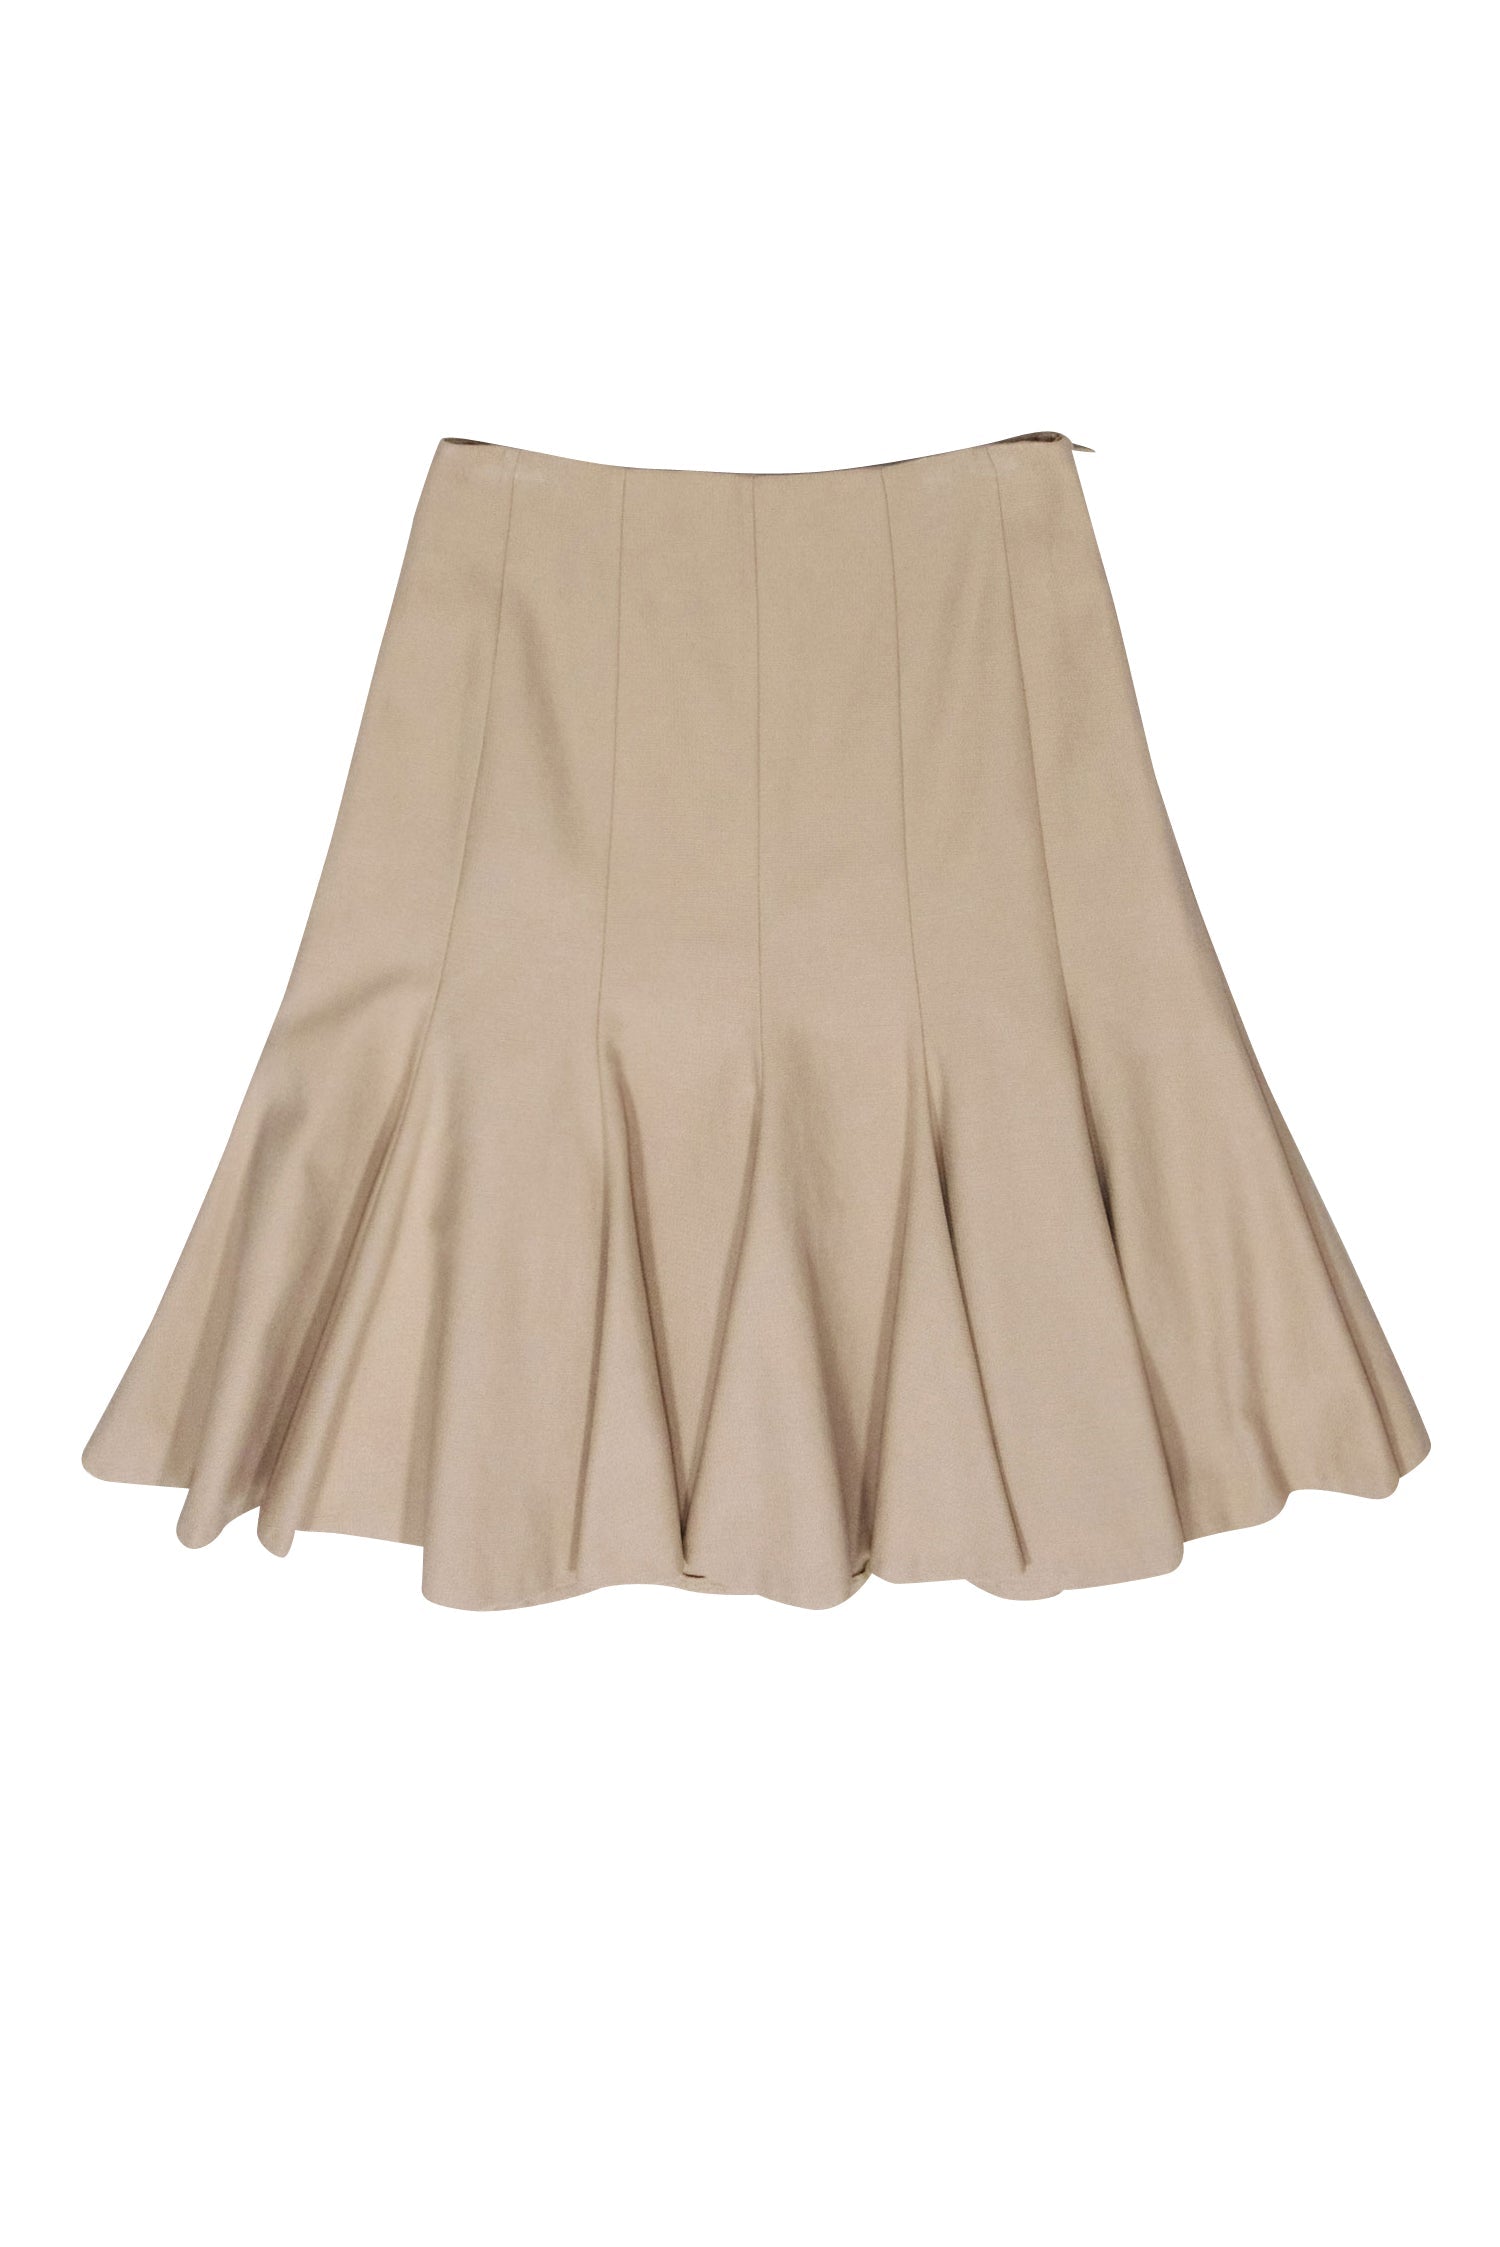 Paule Ka - Beige Pleated Skirt Sz 6